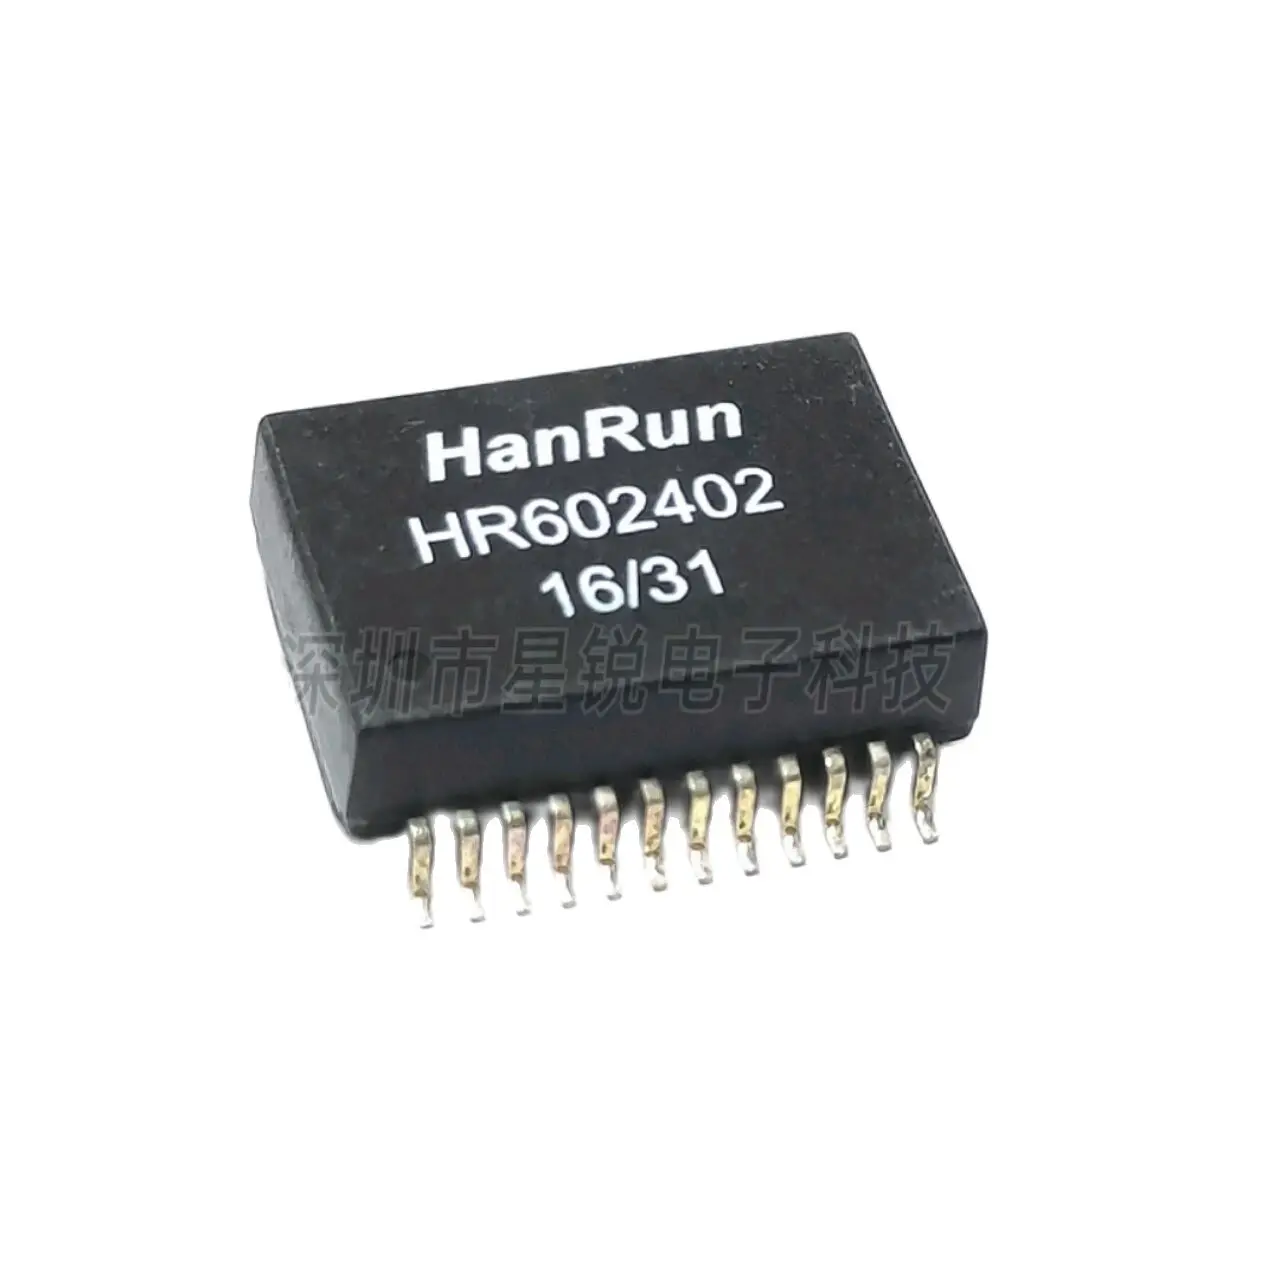 

10 шт./сетевой трансформатор HR602402 HANRUN Hanren SOP24, новый оригинальный прожектор, прямая съемка, гарантия качества